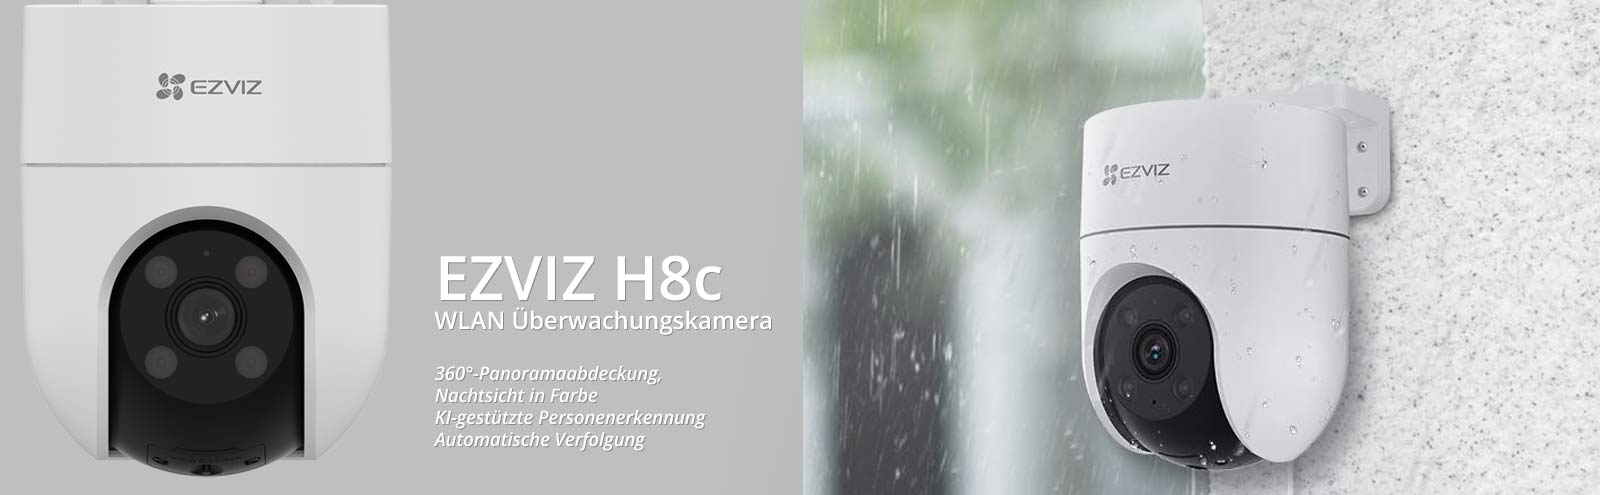 EZVIZ H8c WLAN Überwachungskamera mit Schwenk- und Neigefunktion